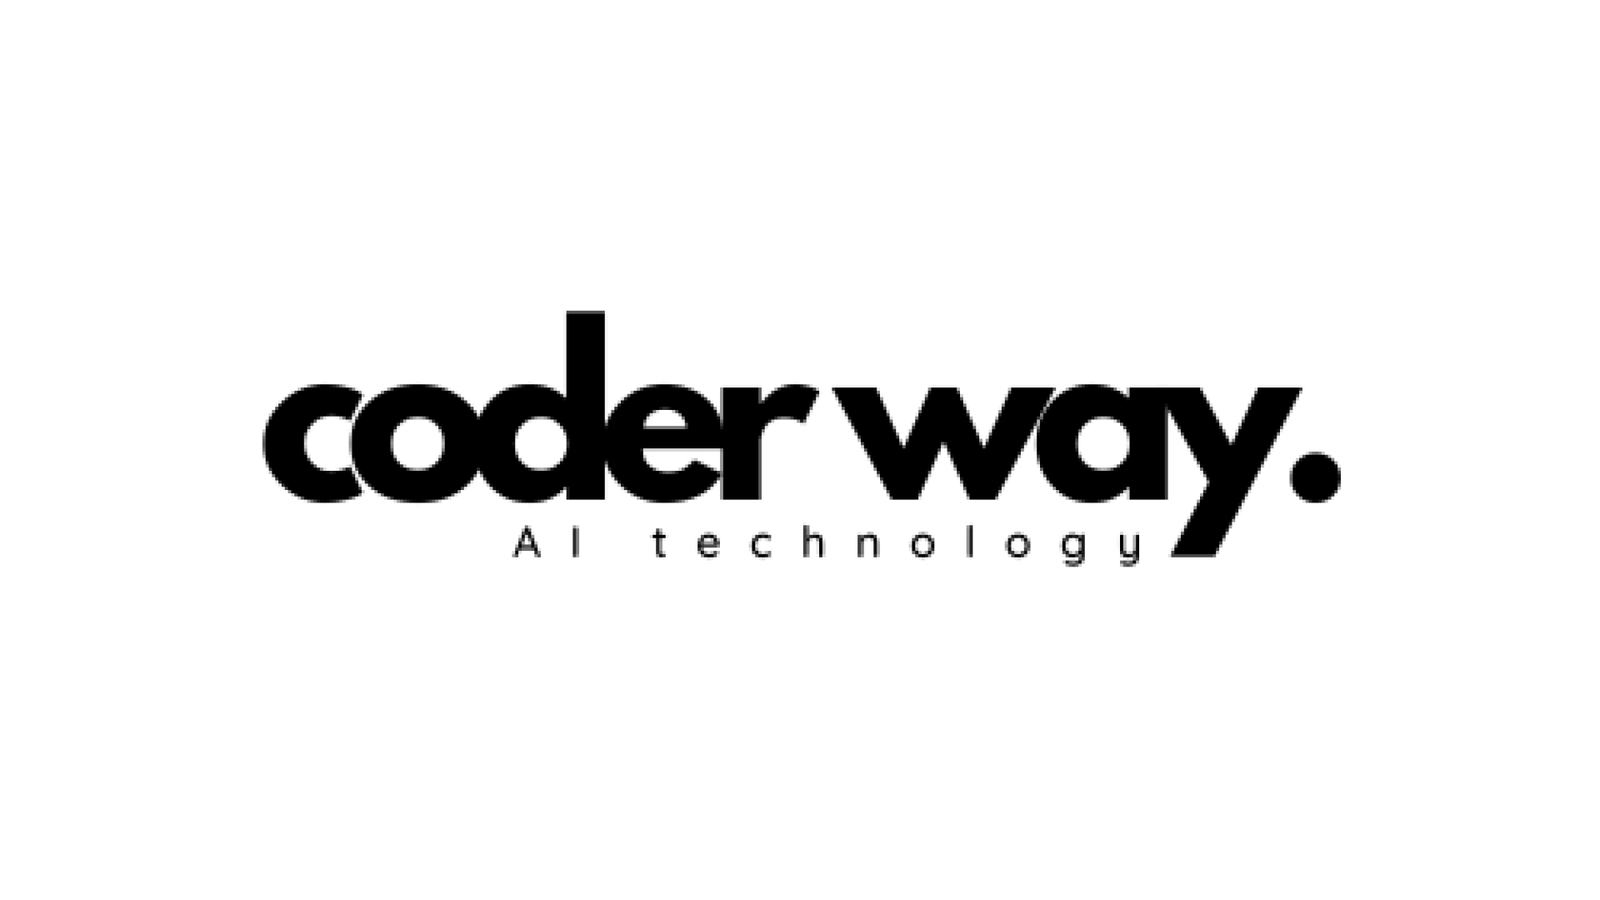 Coderway